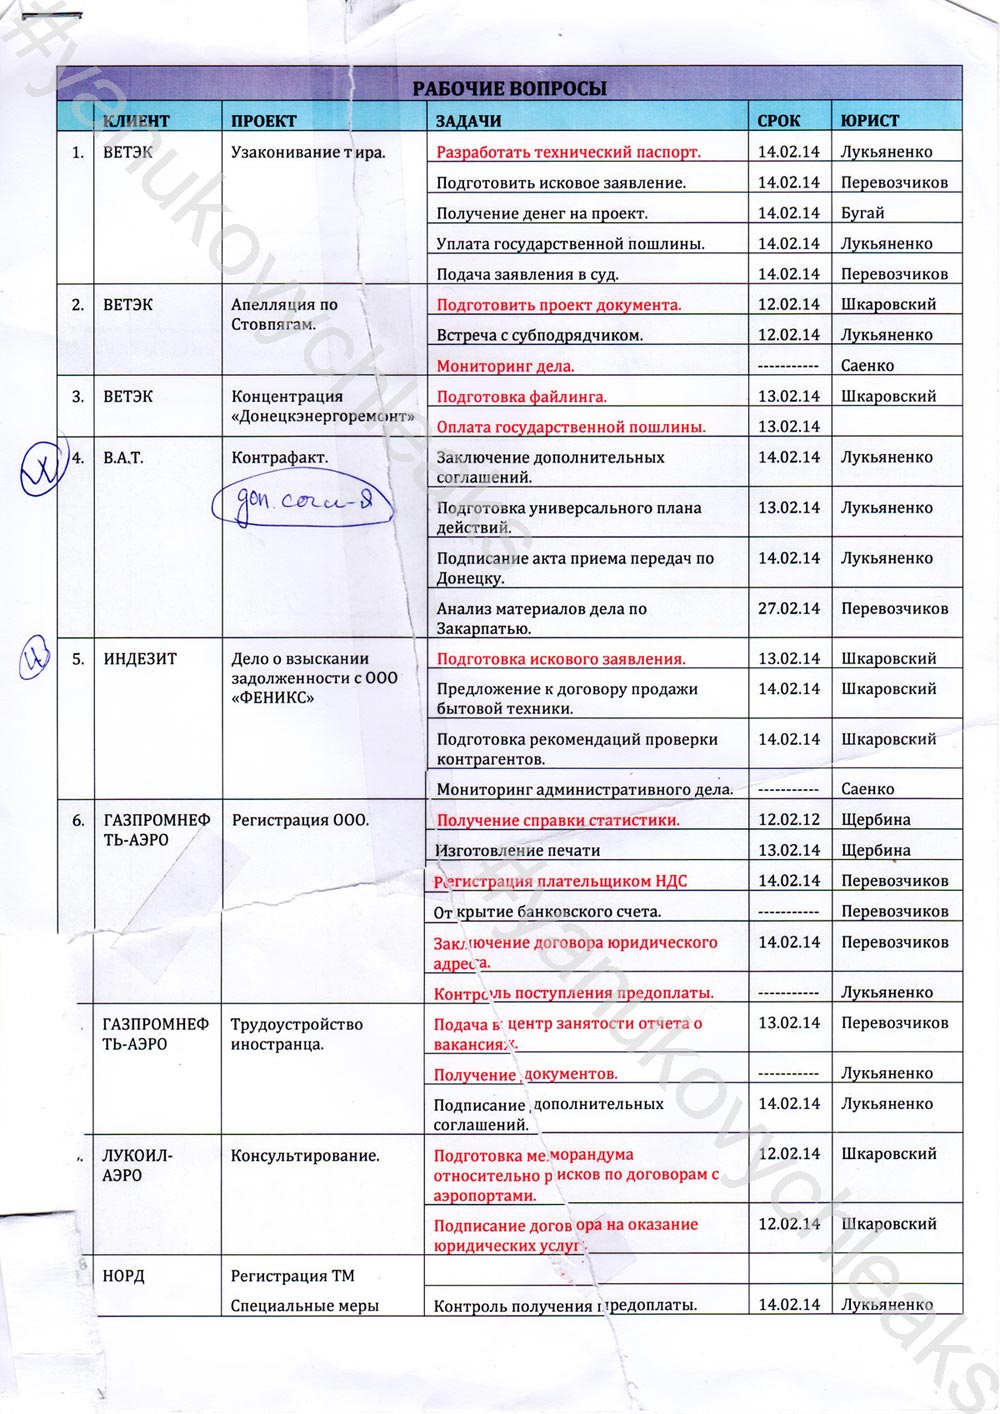 yanukovych-leaks/kurchenko-documents2.jpg